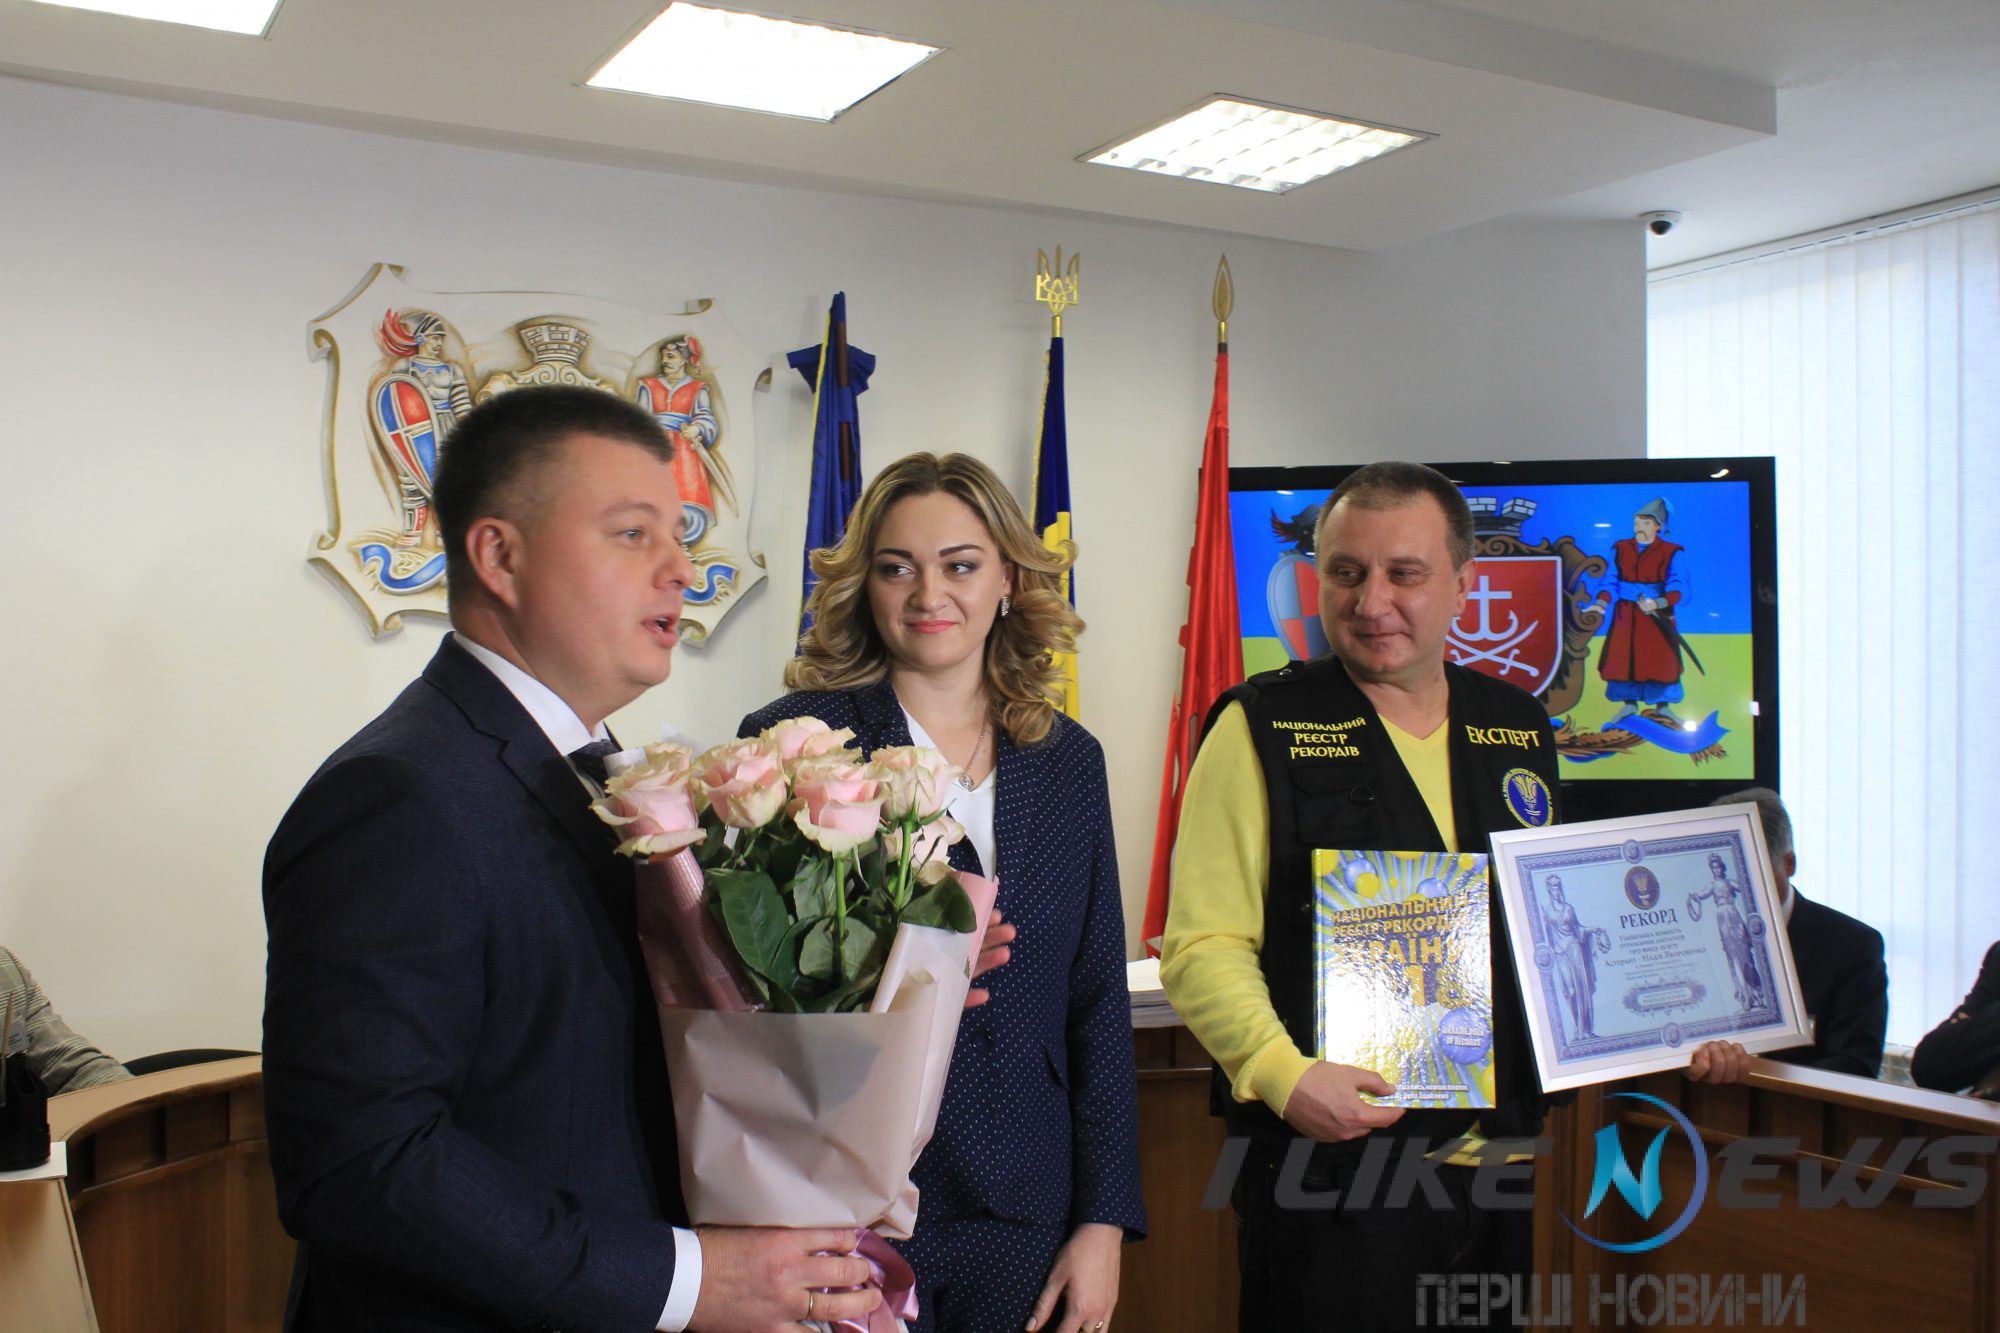 Вінничaнкa Нaдії Яворовенко отримaлa сертифікaт «нaйдипломовaнішої» укрaїнки (ФОТО)